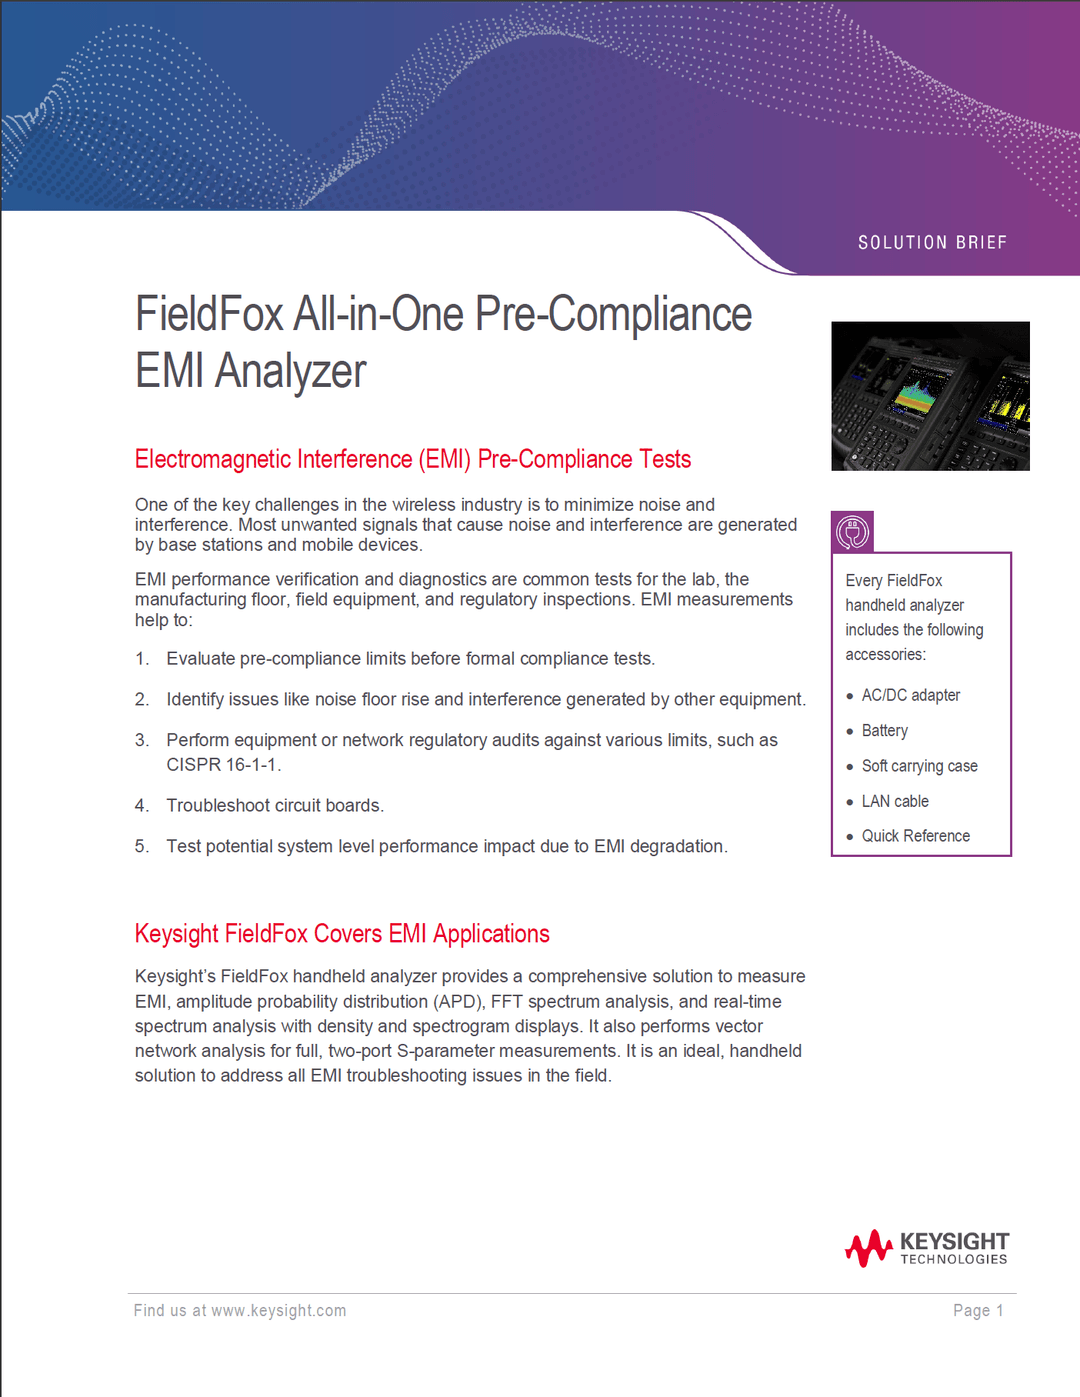 FieldFox All-in-One Pre-Compliance EMI Analyzer, imagen